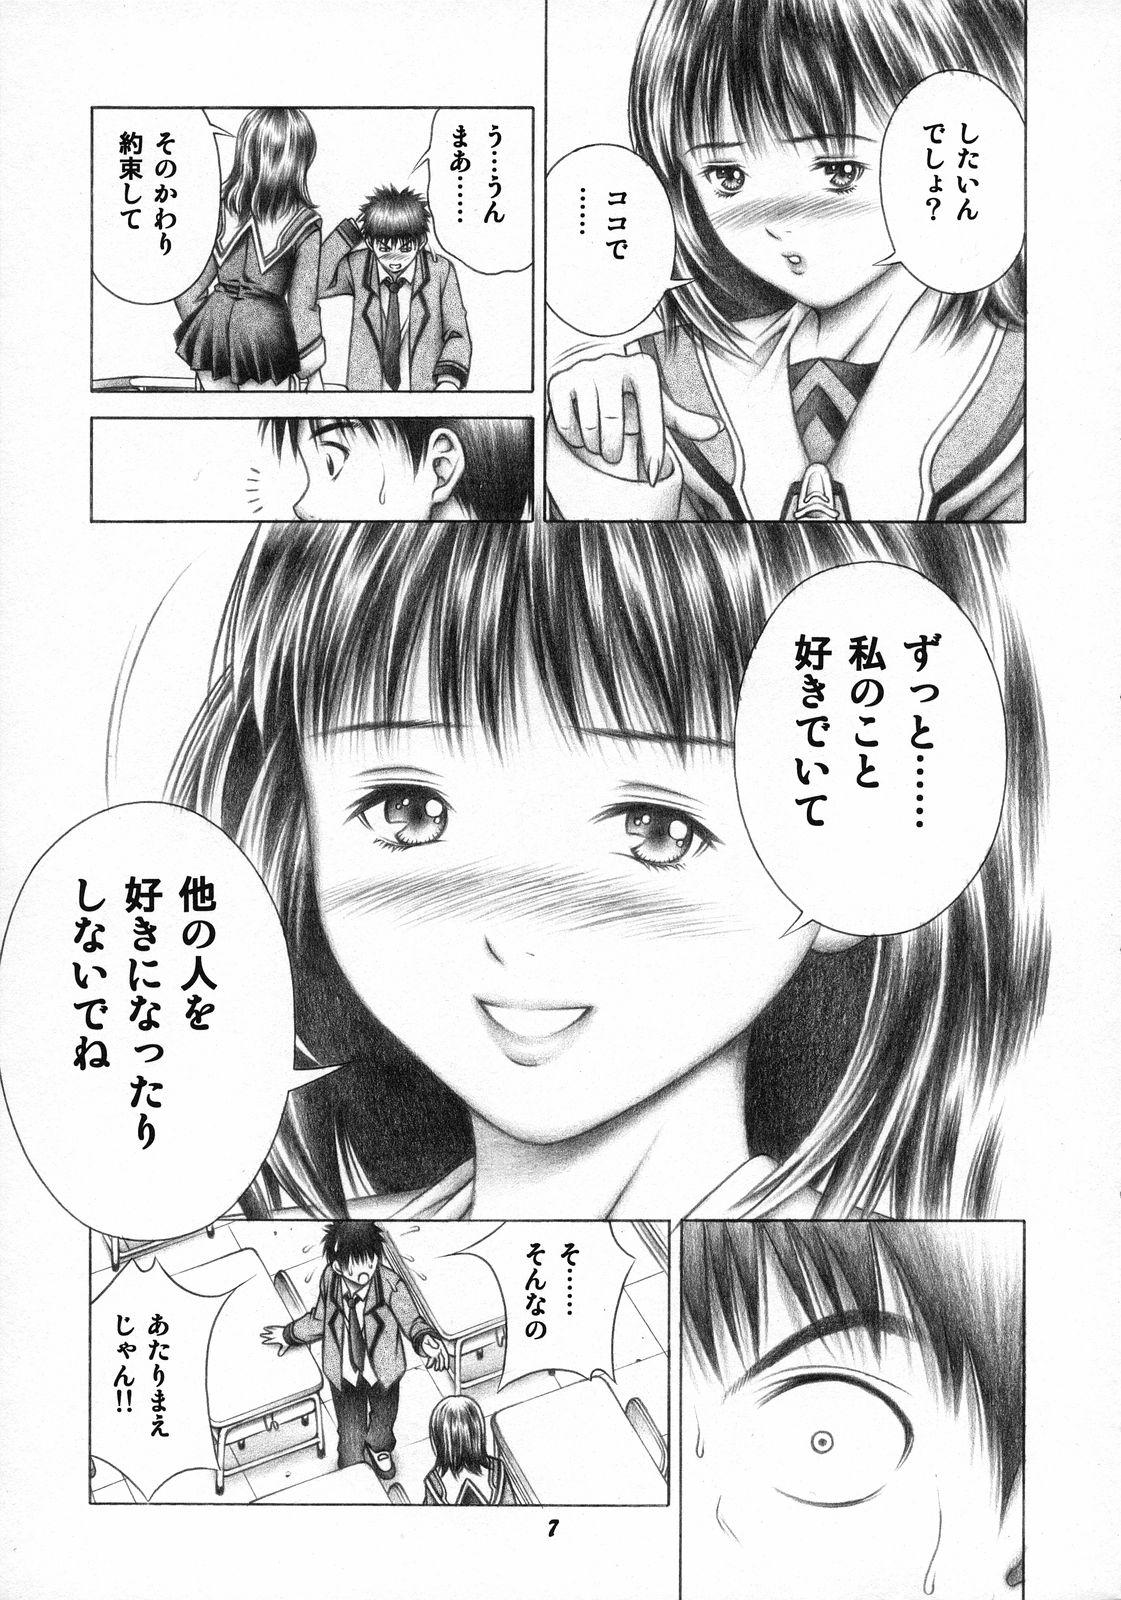 Gorda Iori to Fuwafuwarin - Is Boobs - Page 6